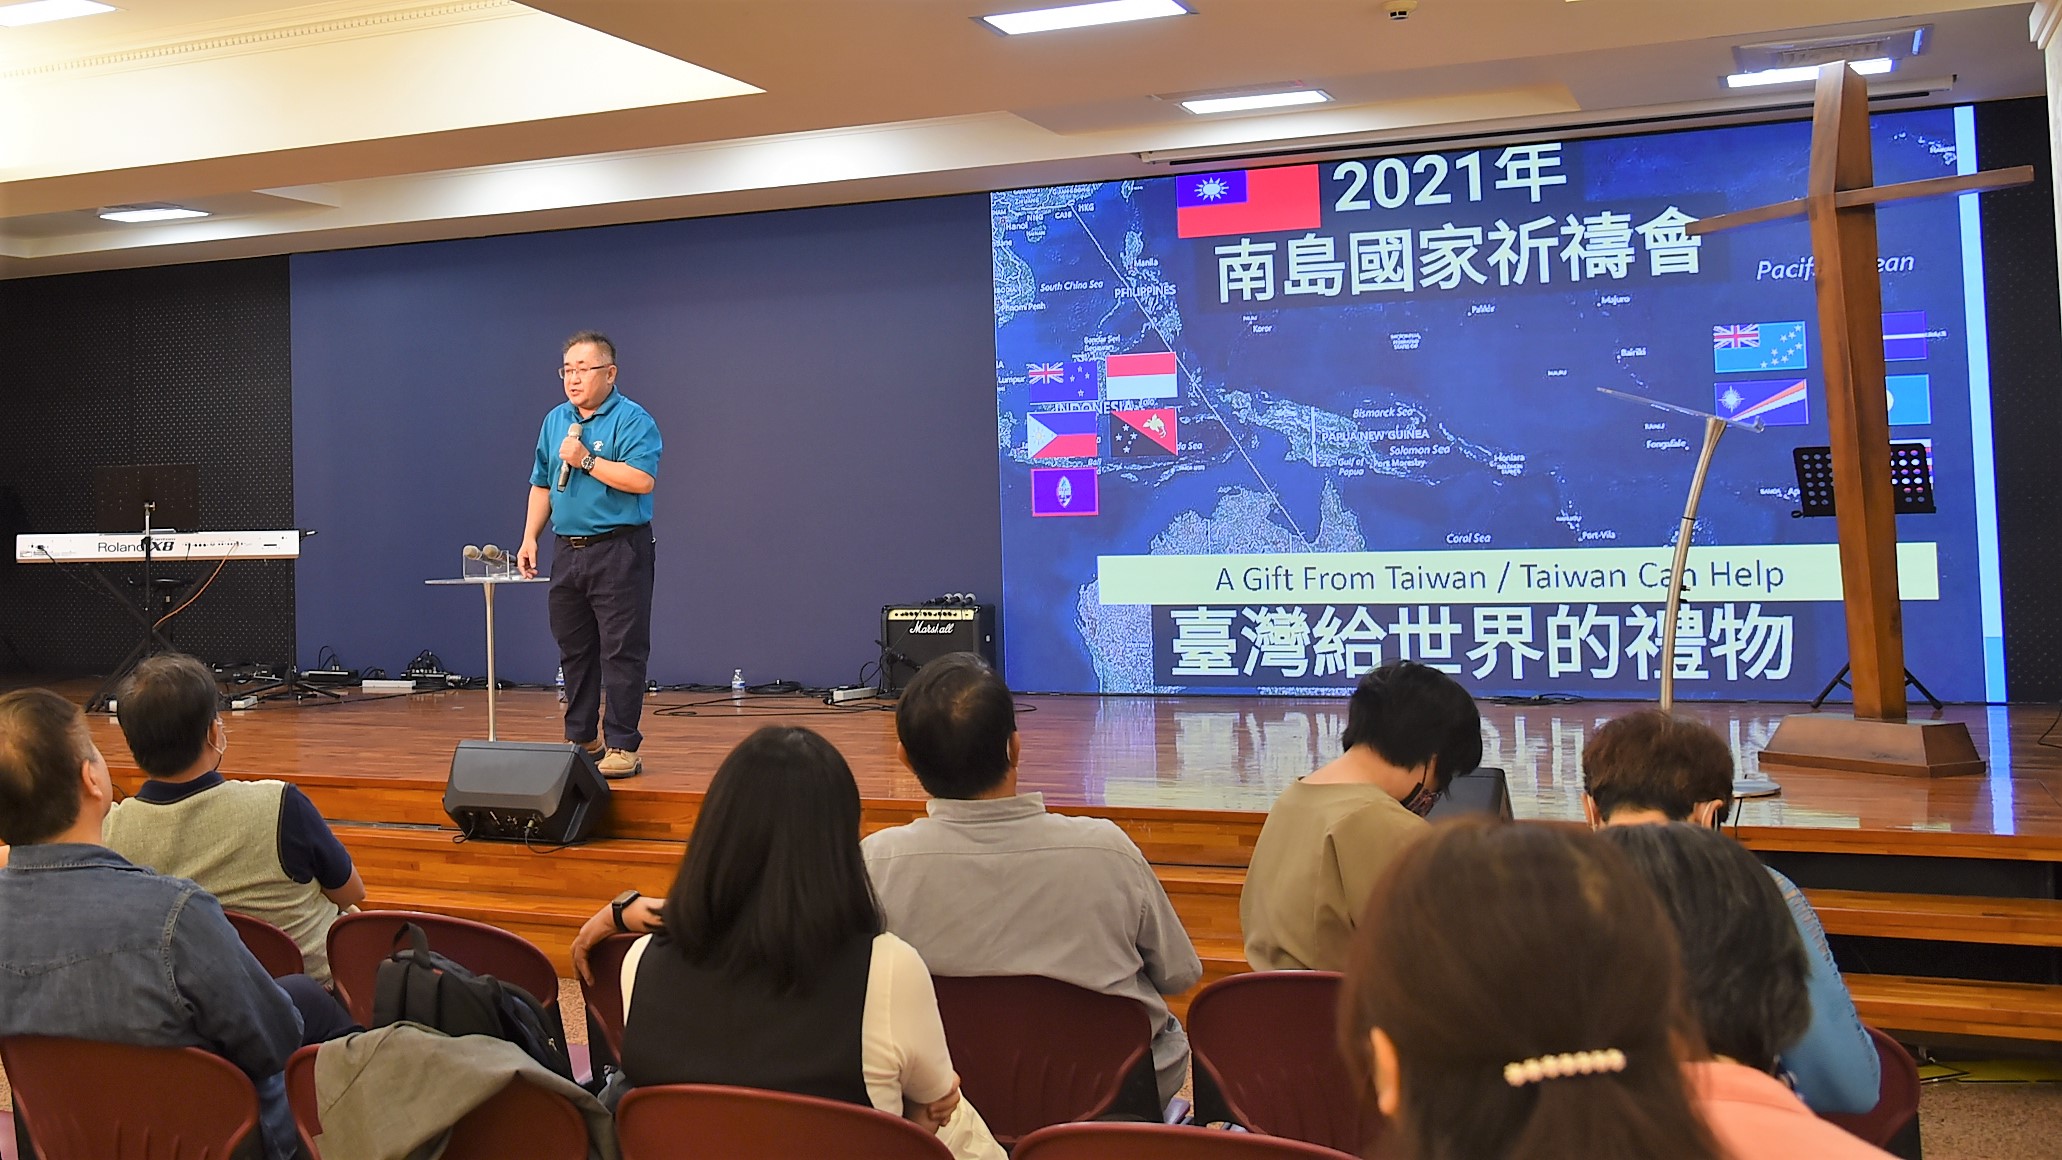 「2021南島國家祈禱會」主席團主席為中華民國無任所大使吳大衛牧師（芙厄阿．布達爾）。